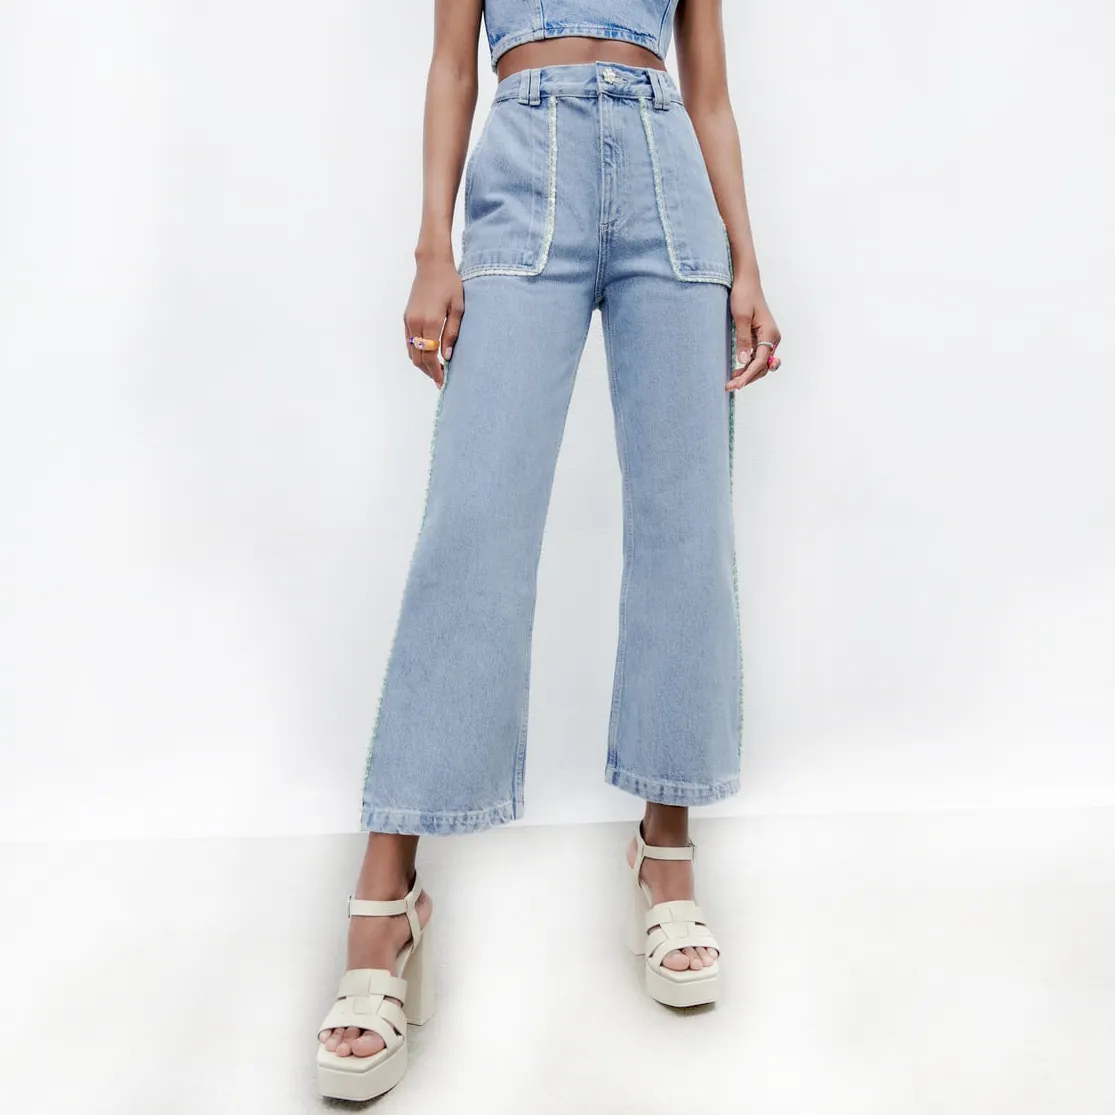 Denim Jeans Bekleidungs hersteller Benutzer definierte hochwertige Spitzen besatz um die Tasche breites Bein Baumwolle Denim Hosen Jeans Frauen